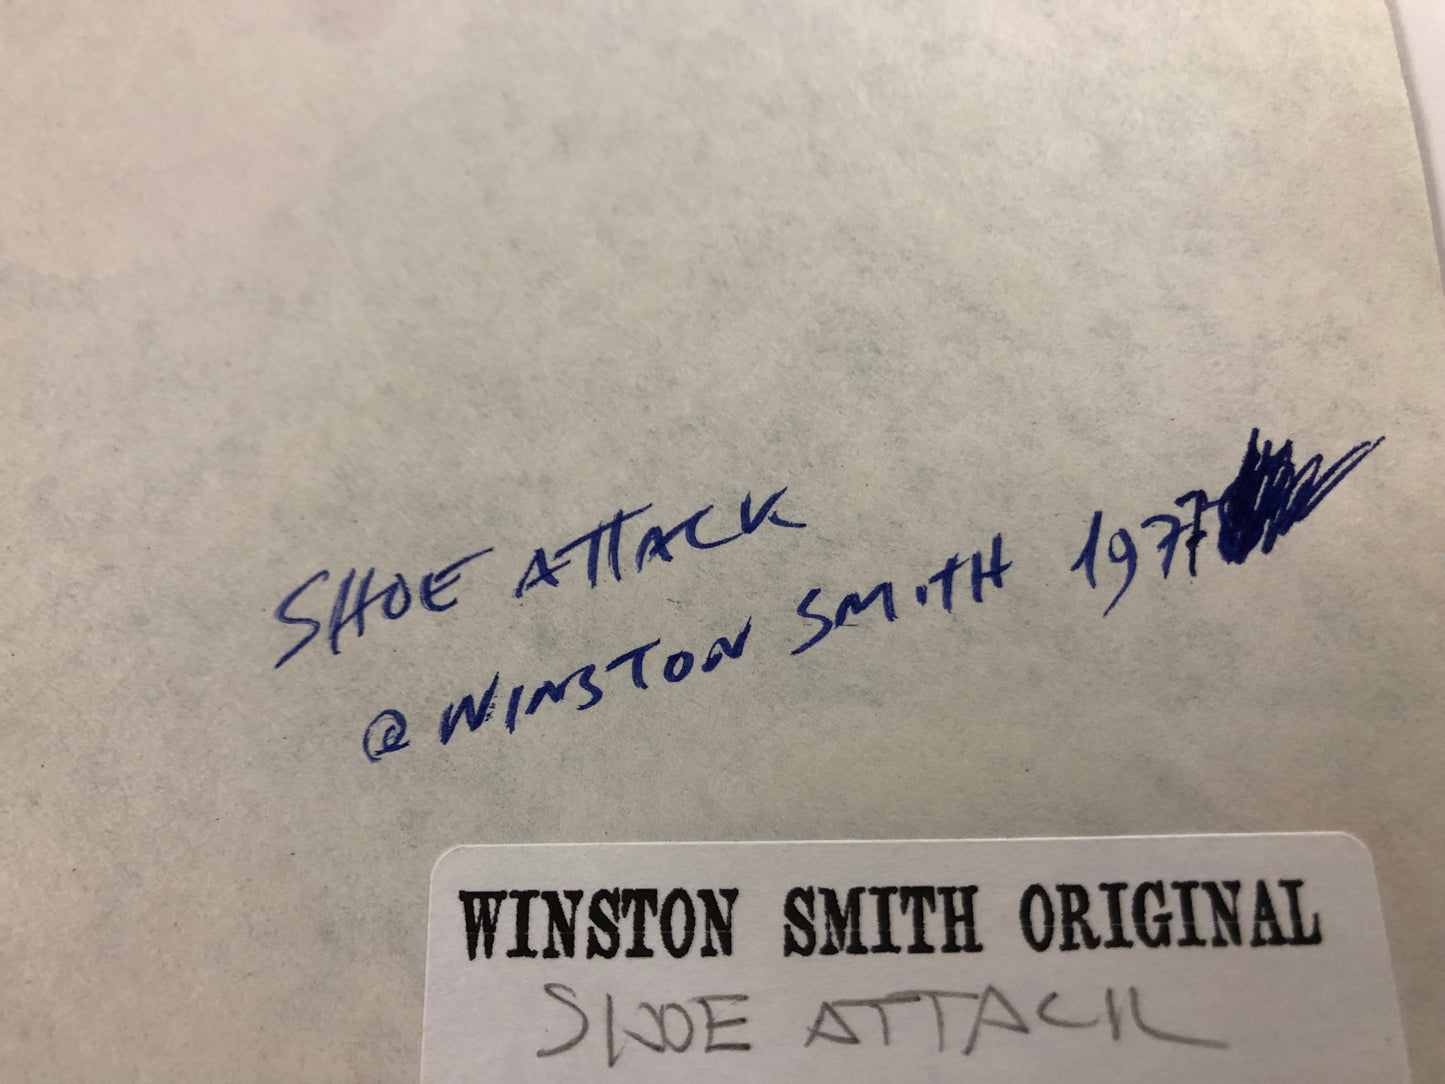 Winston Smith "Shoe Attack" (1976-77)